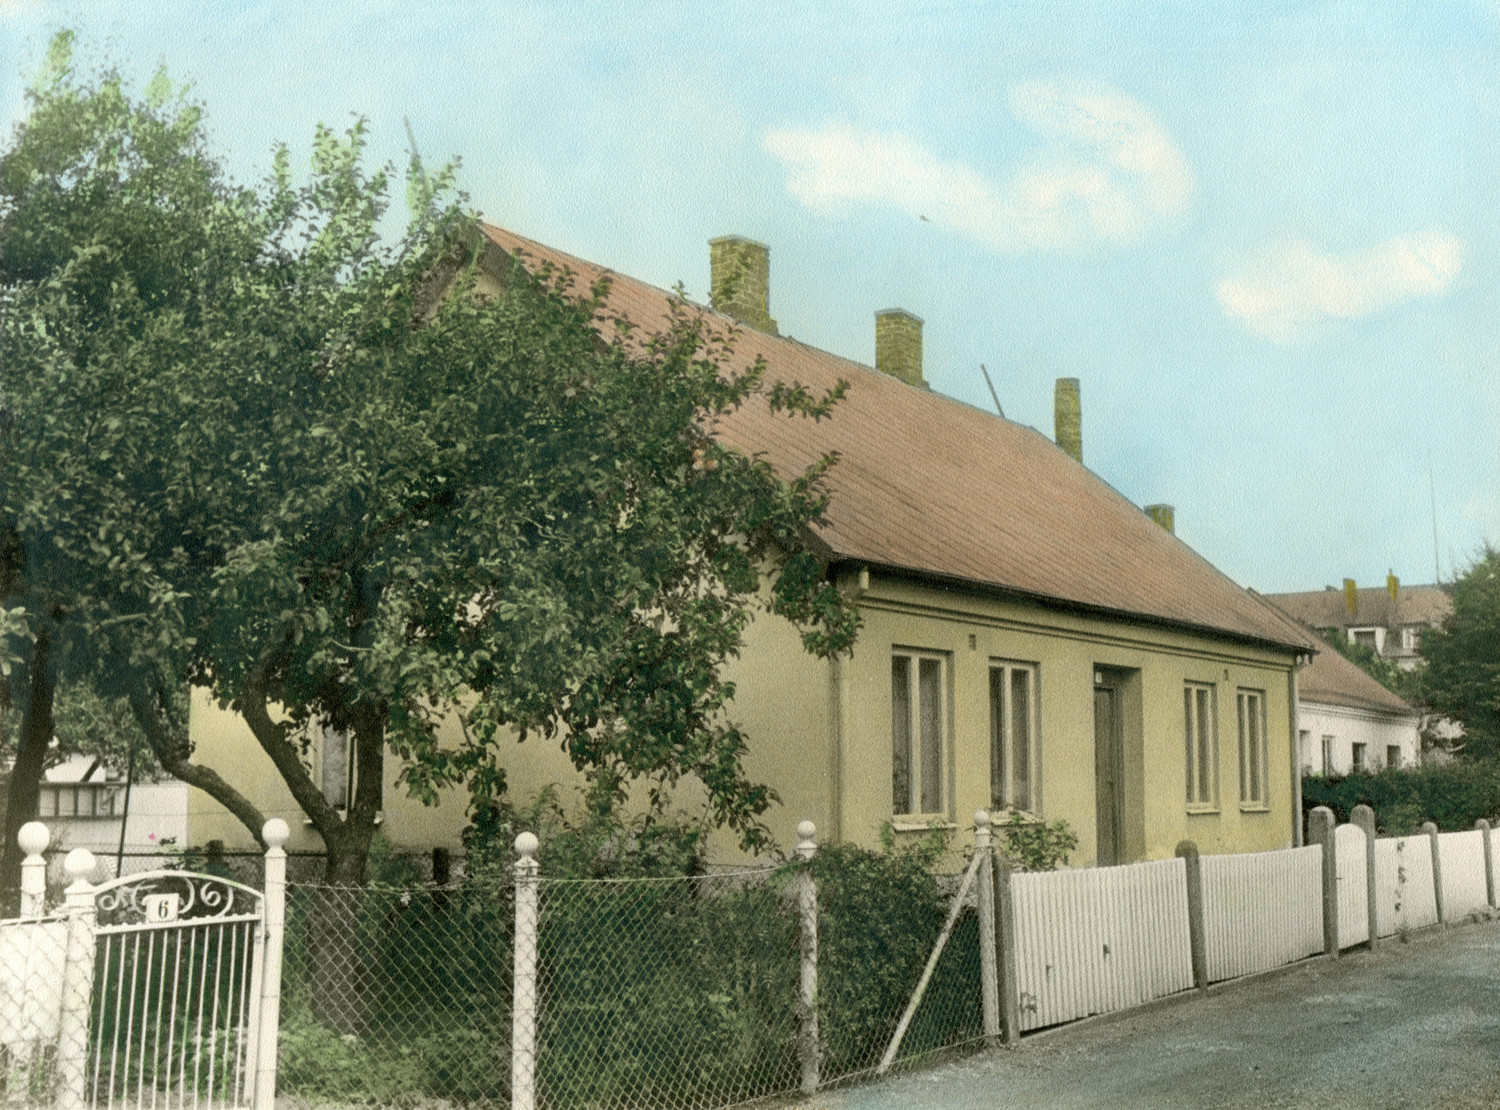 Limhamn House